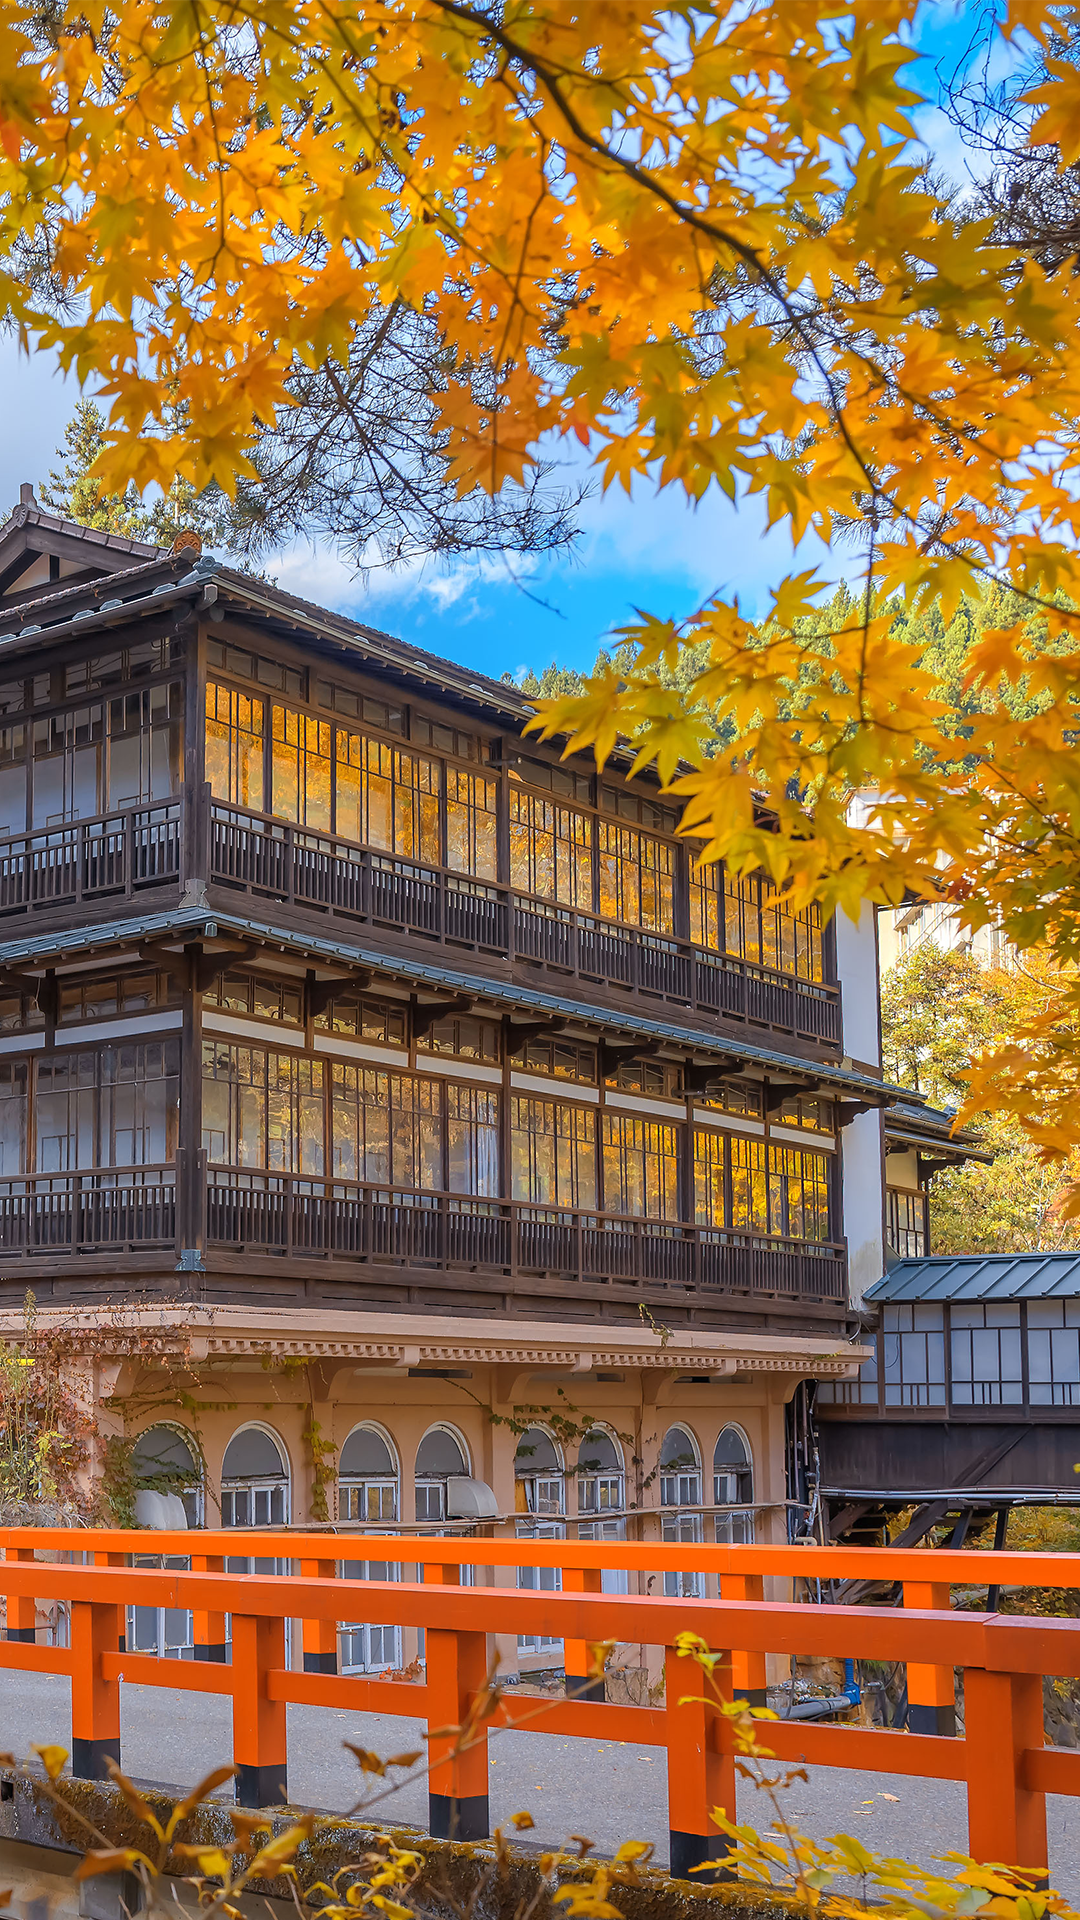 日本古典建筑唯美风景,高清图片,手机壁纸